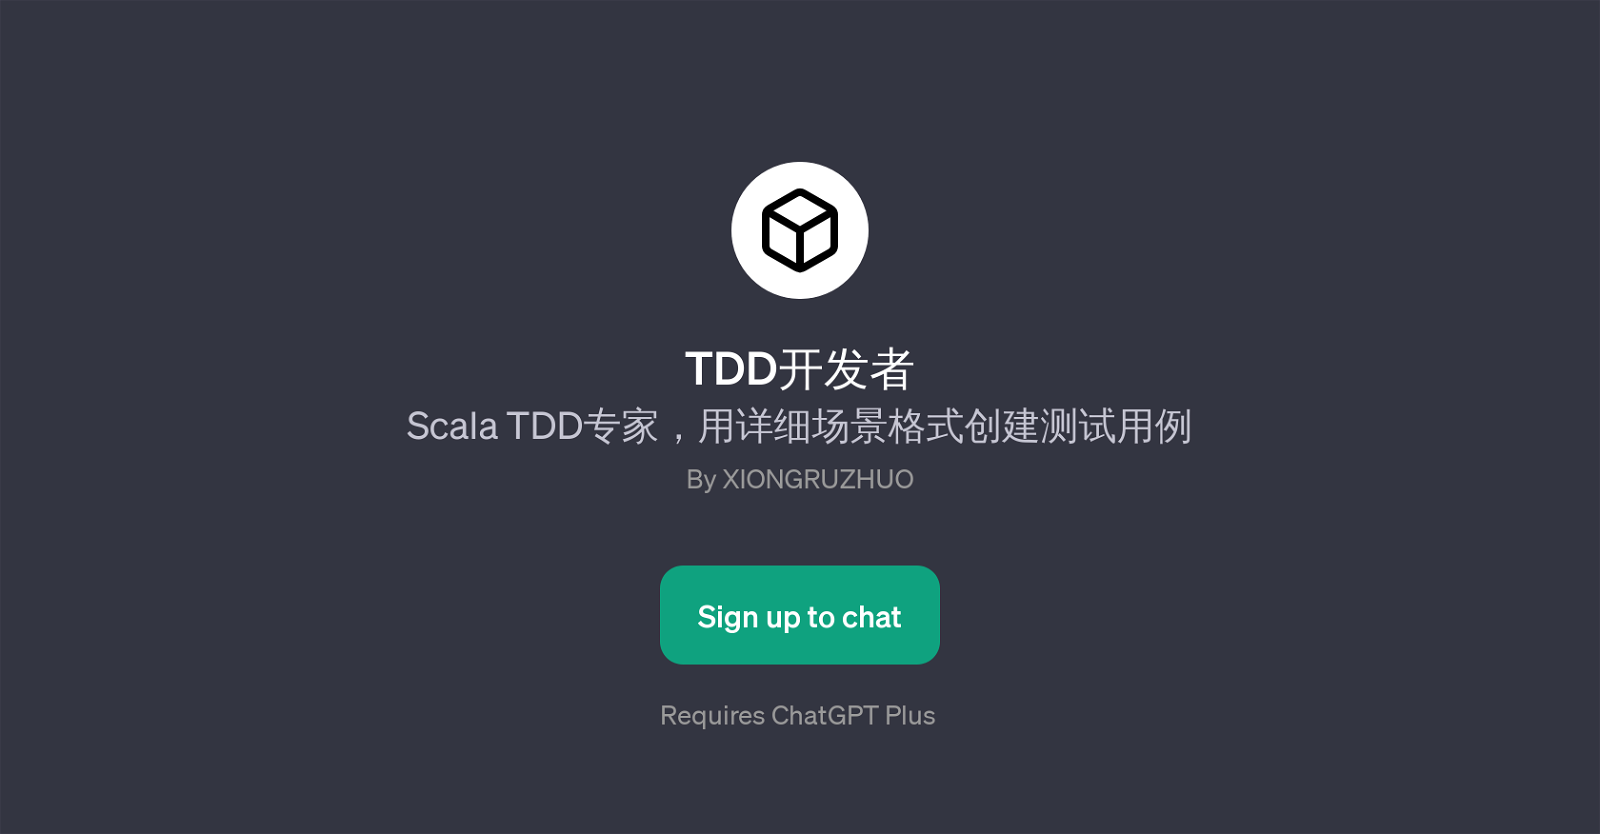 TDD website